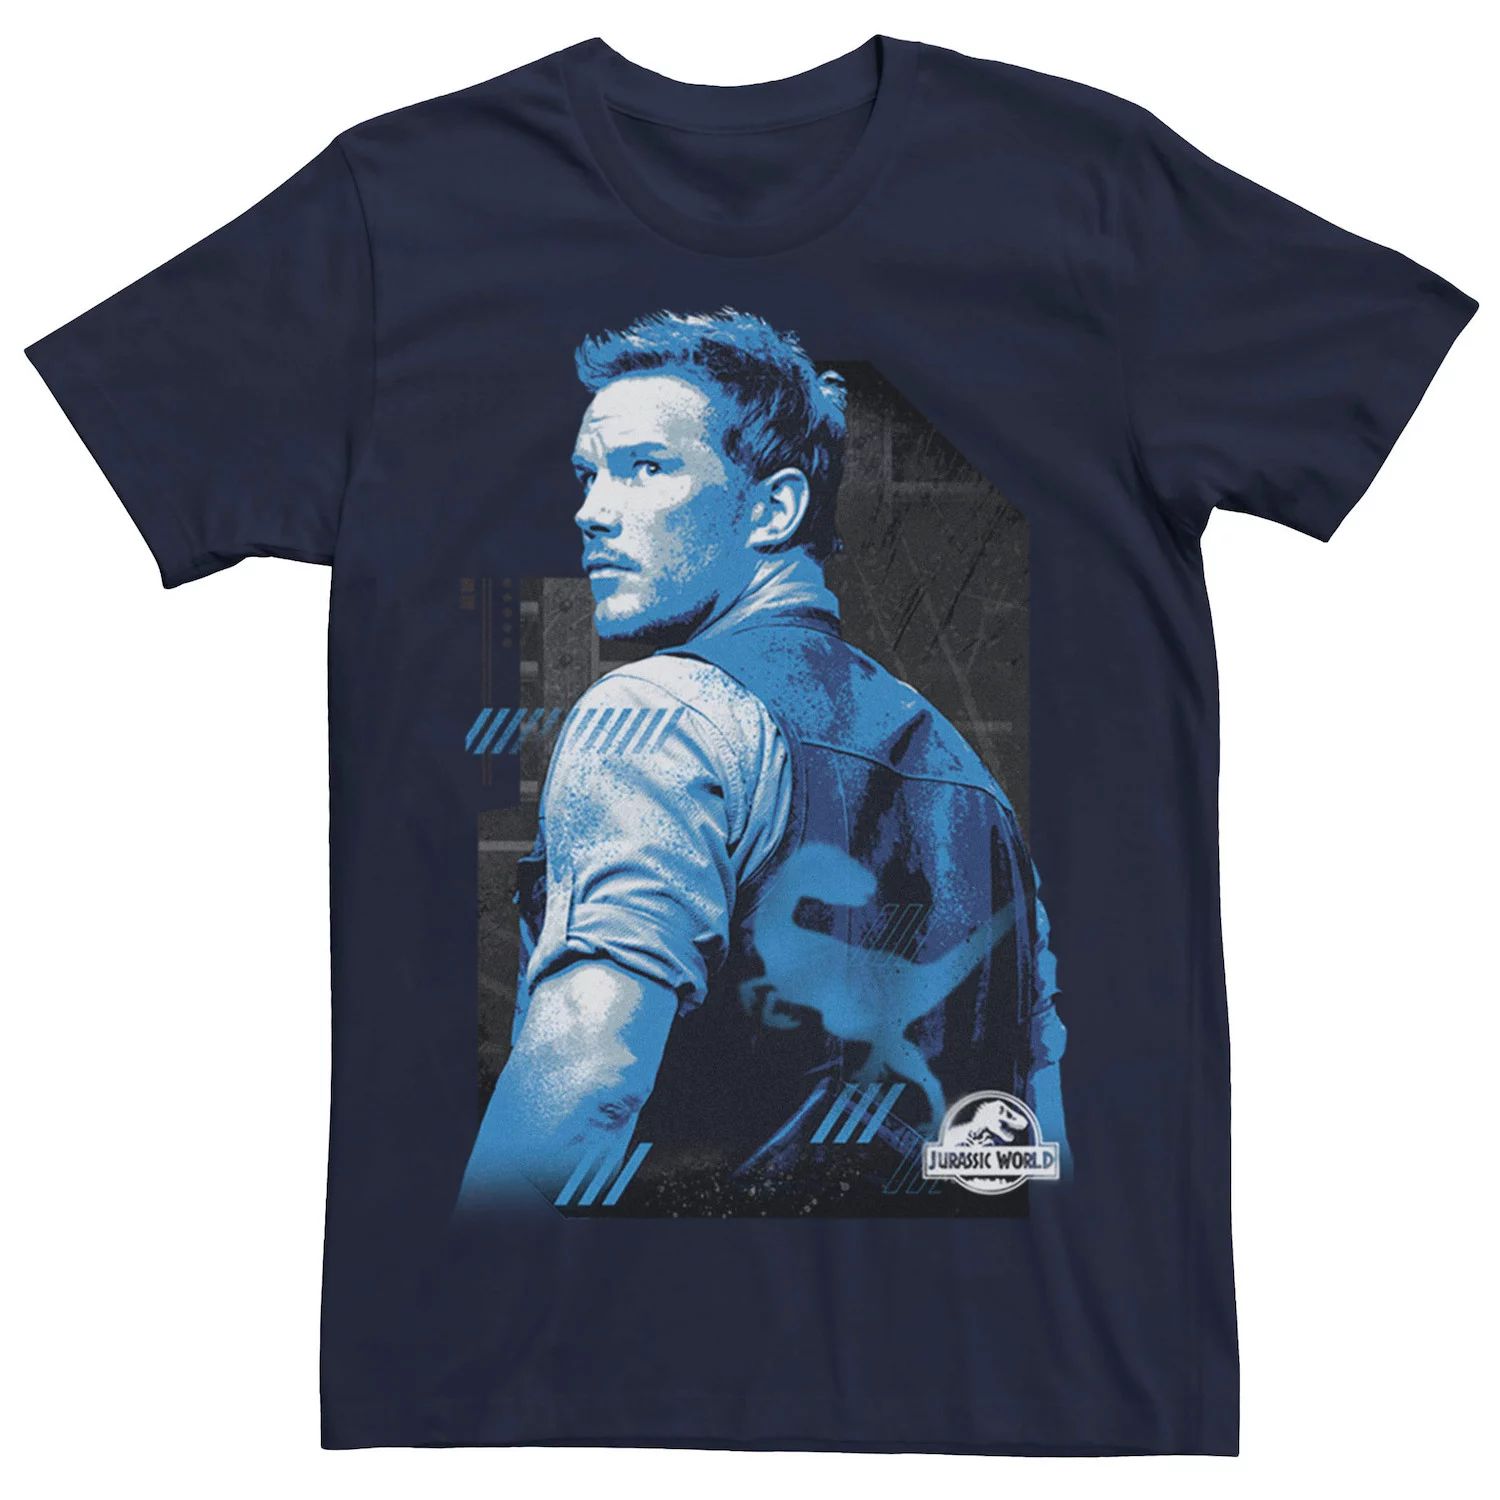 цена Мужская синяя футболка с портретом Owen, Blue Jurassic World, синий